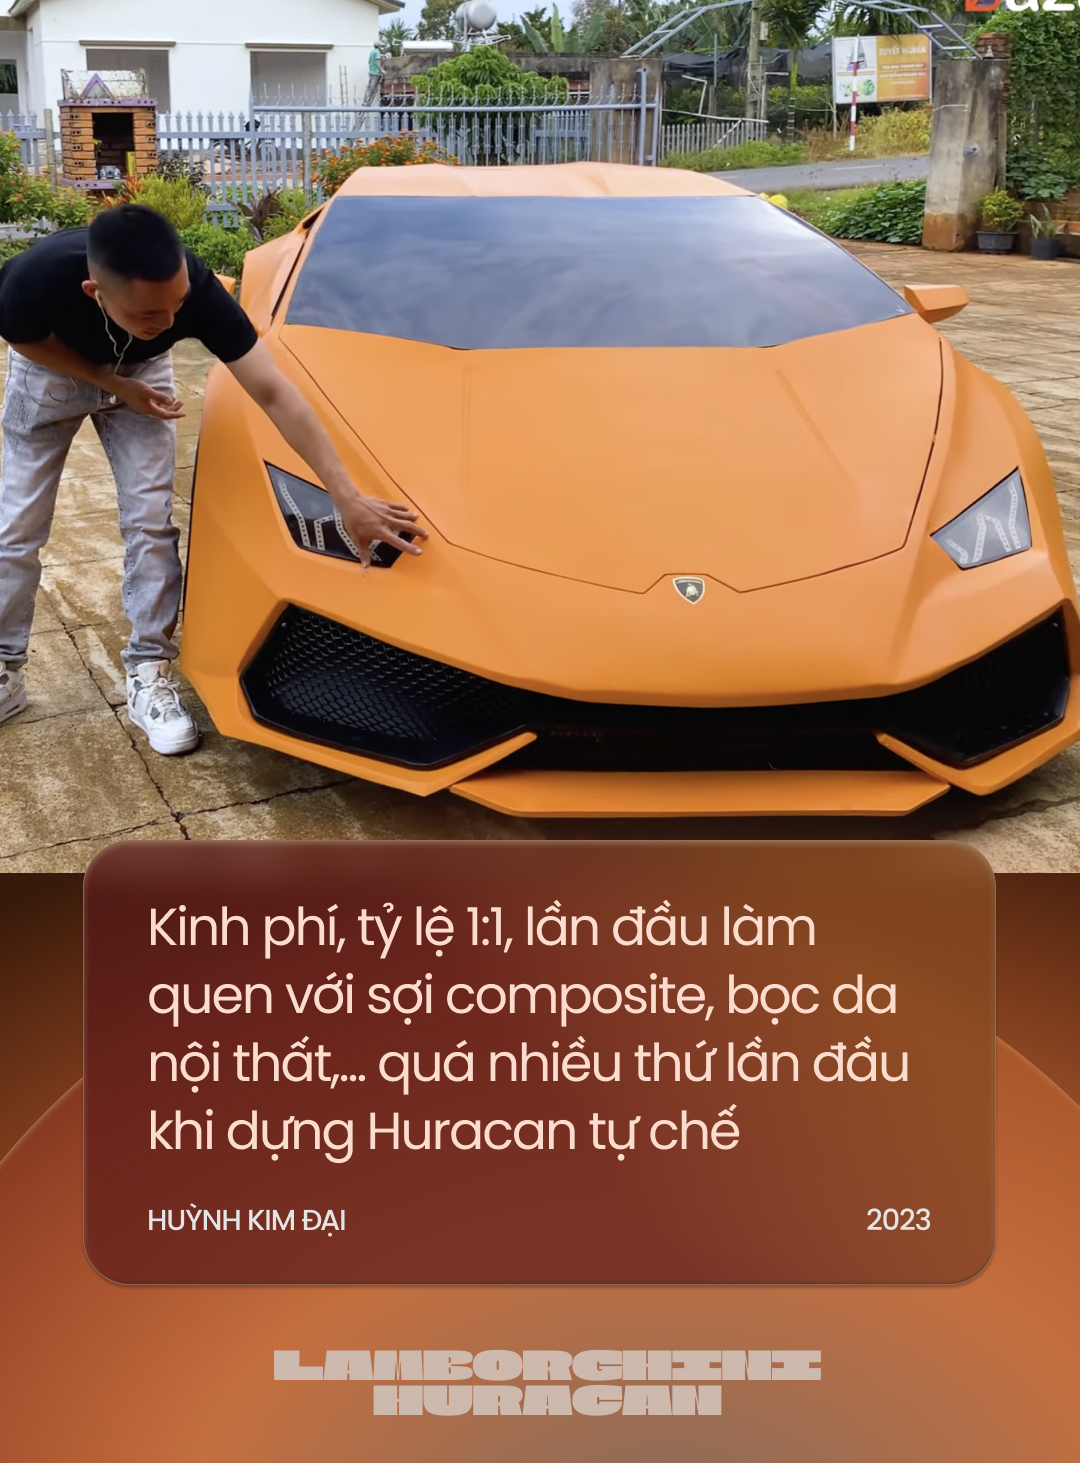 Đôi bạn Tây Nguyên tự chế Lamborghini Huracan khiến cộng đồng quốc tế trầm trồ: ‘Năm tới sẽ chuyển mình để độc lạ nhất Việt Nam’ - Ảnh 4.